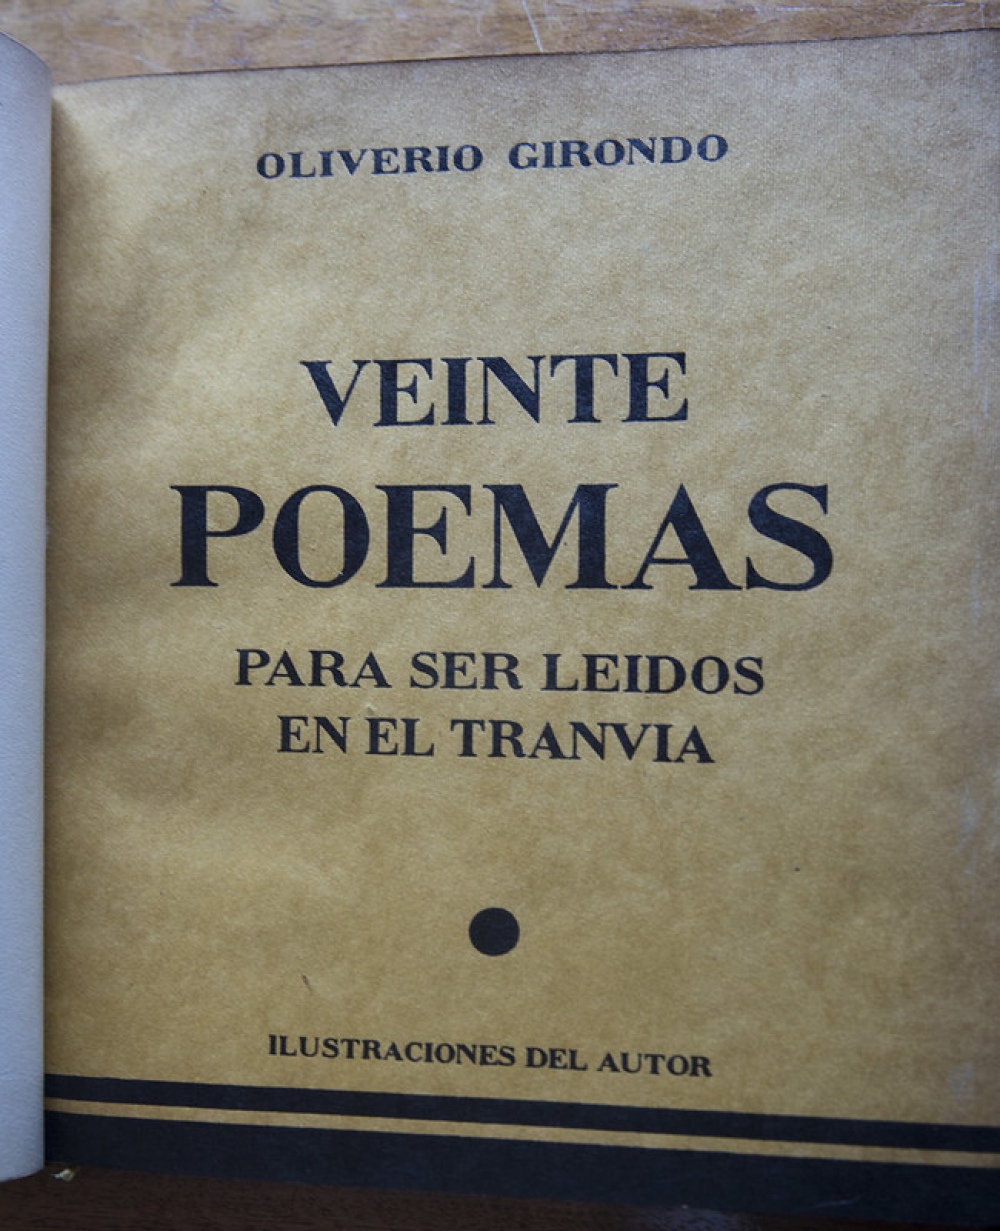 100 años de "Veinte poemas para ser leídos en el tranvía"